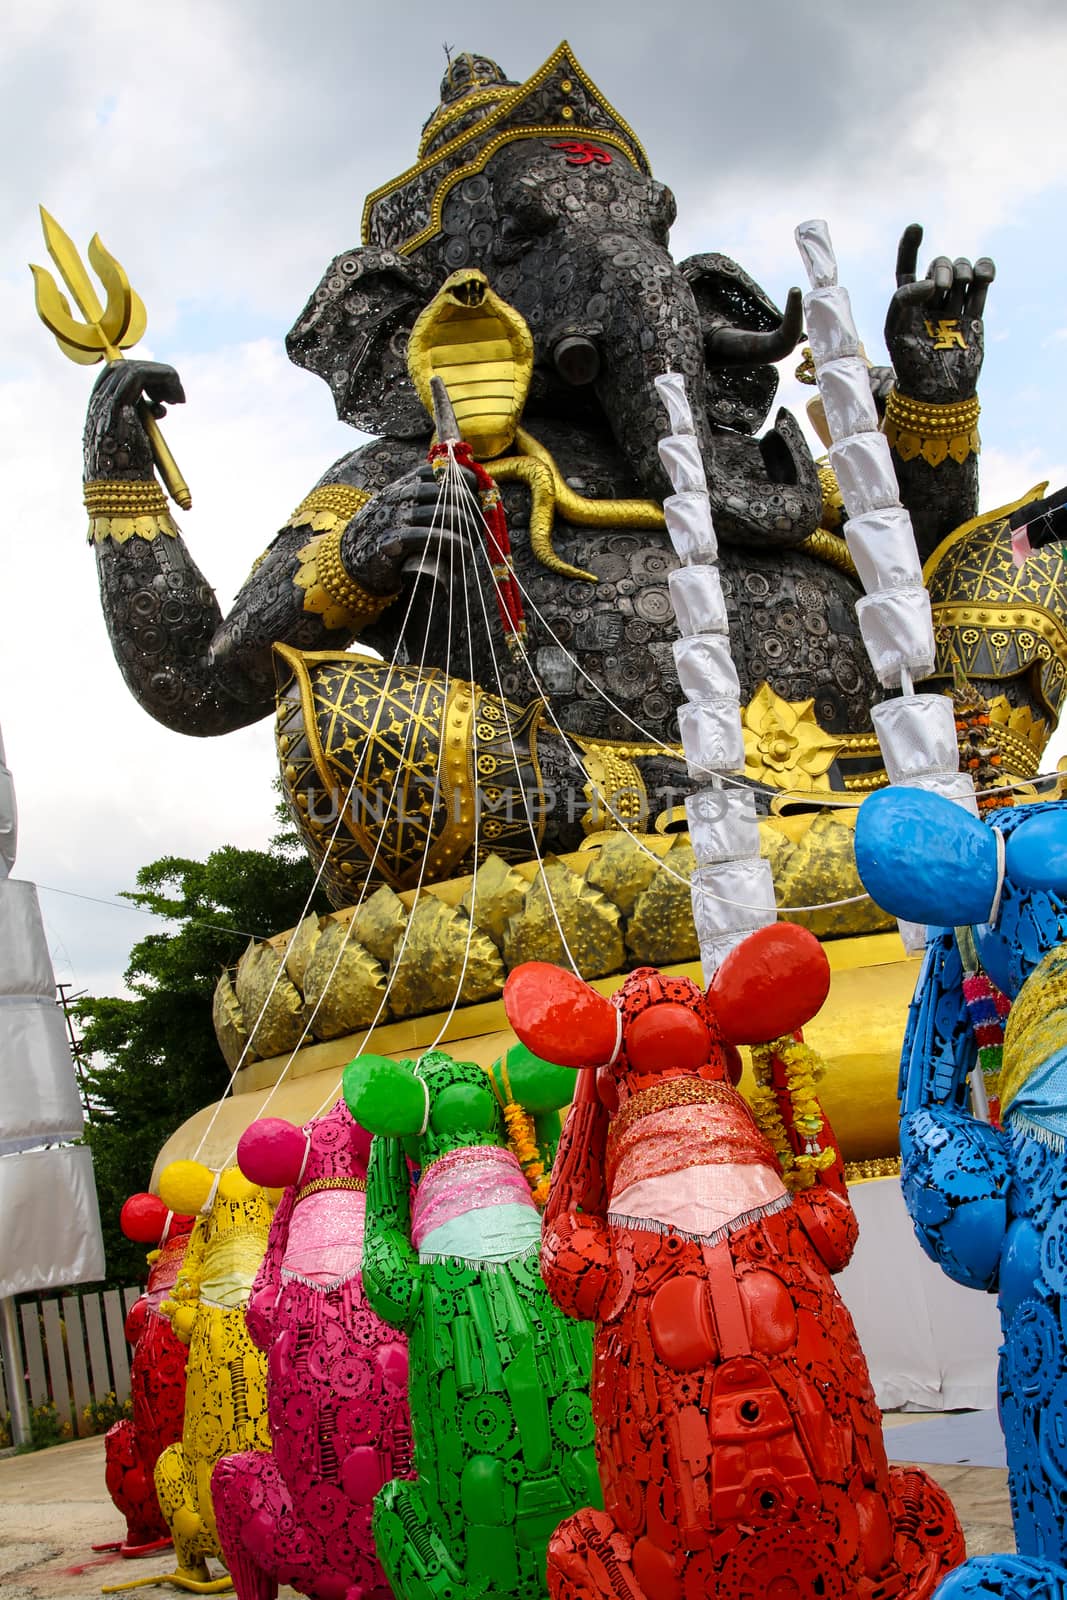 Ganesh  Iron, HUN LEK KORAT in Nakhon Ratchasima,Thailand.